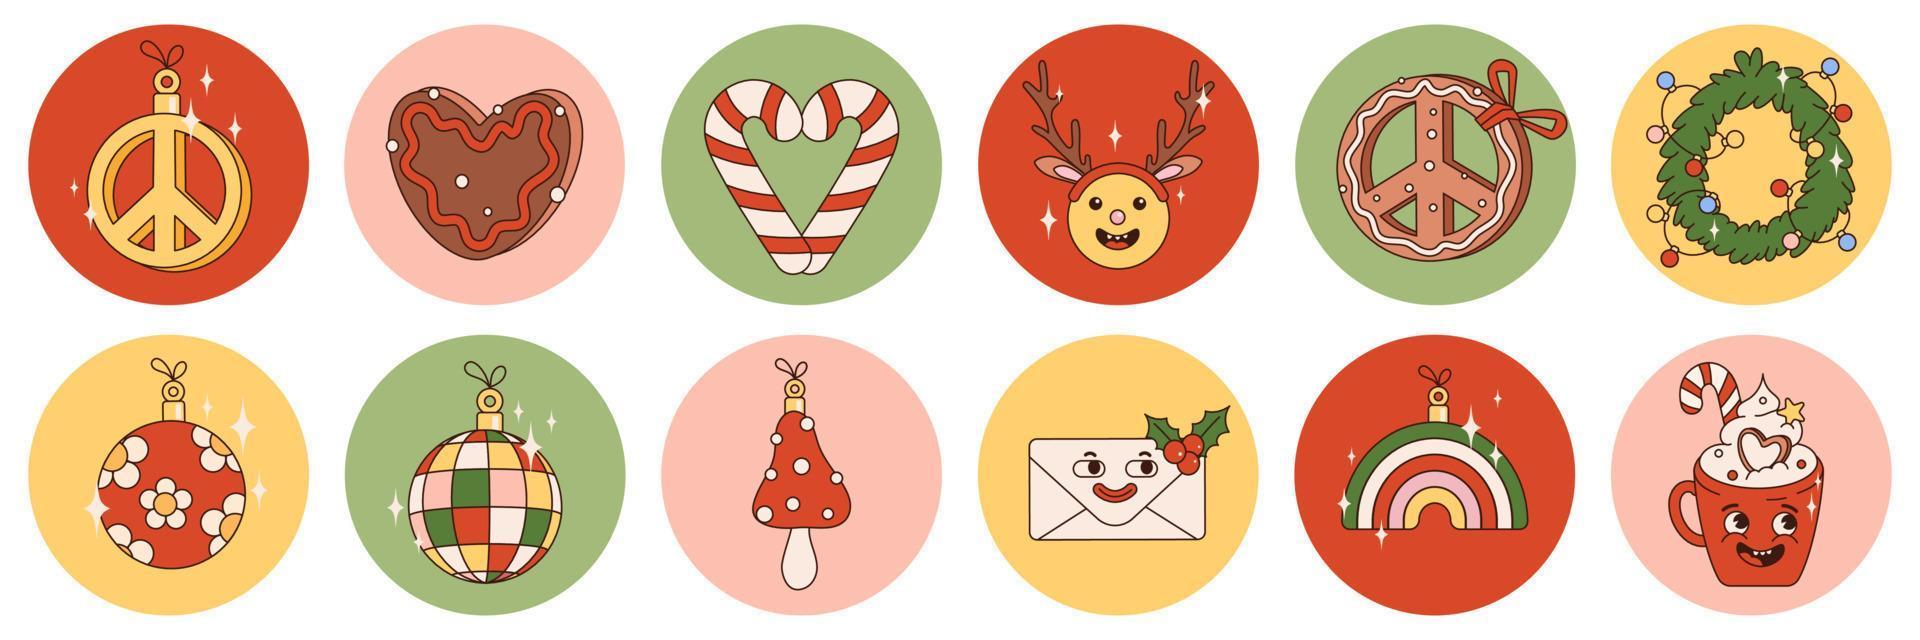 paquete de pegatinas navideñas hippie groovy con personajes y elementos de dibujos animados retro. feliz navidad y próspero año nuevo en vibraciones de los 70. vector